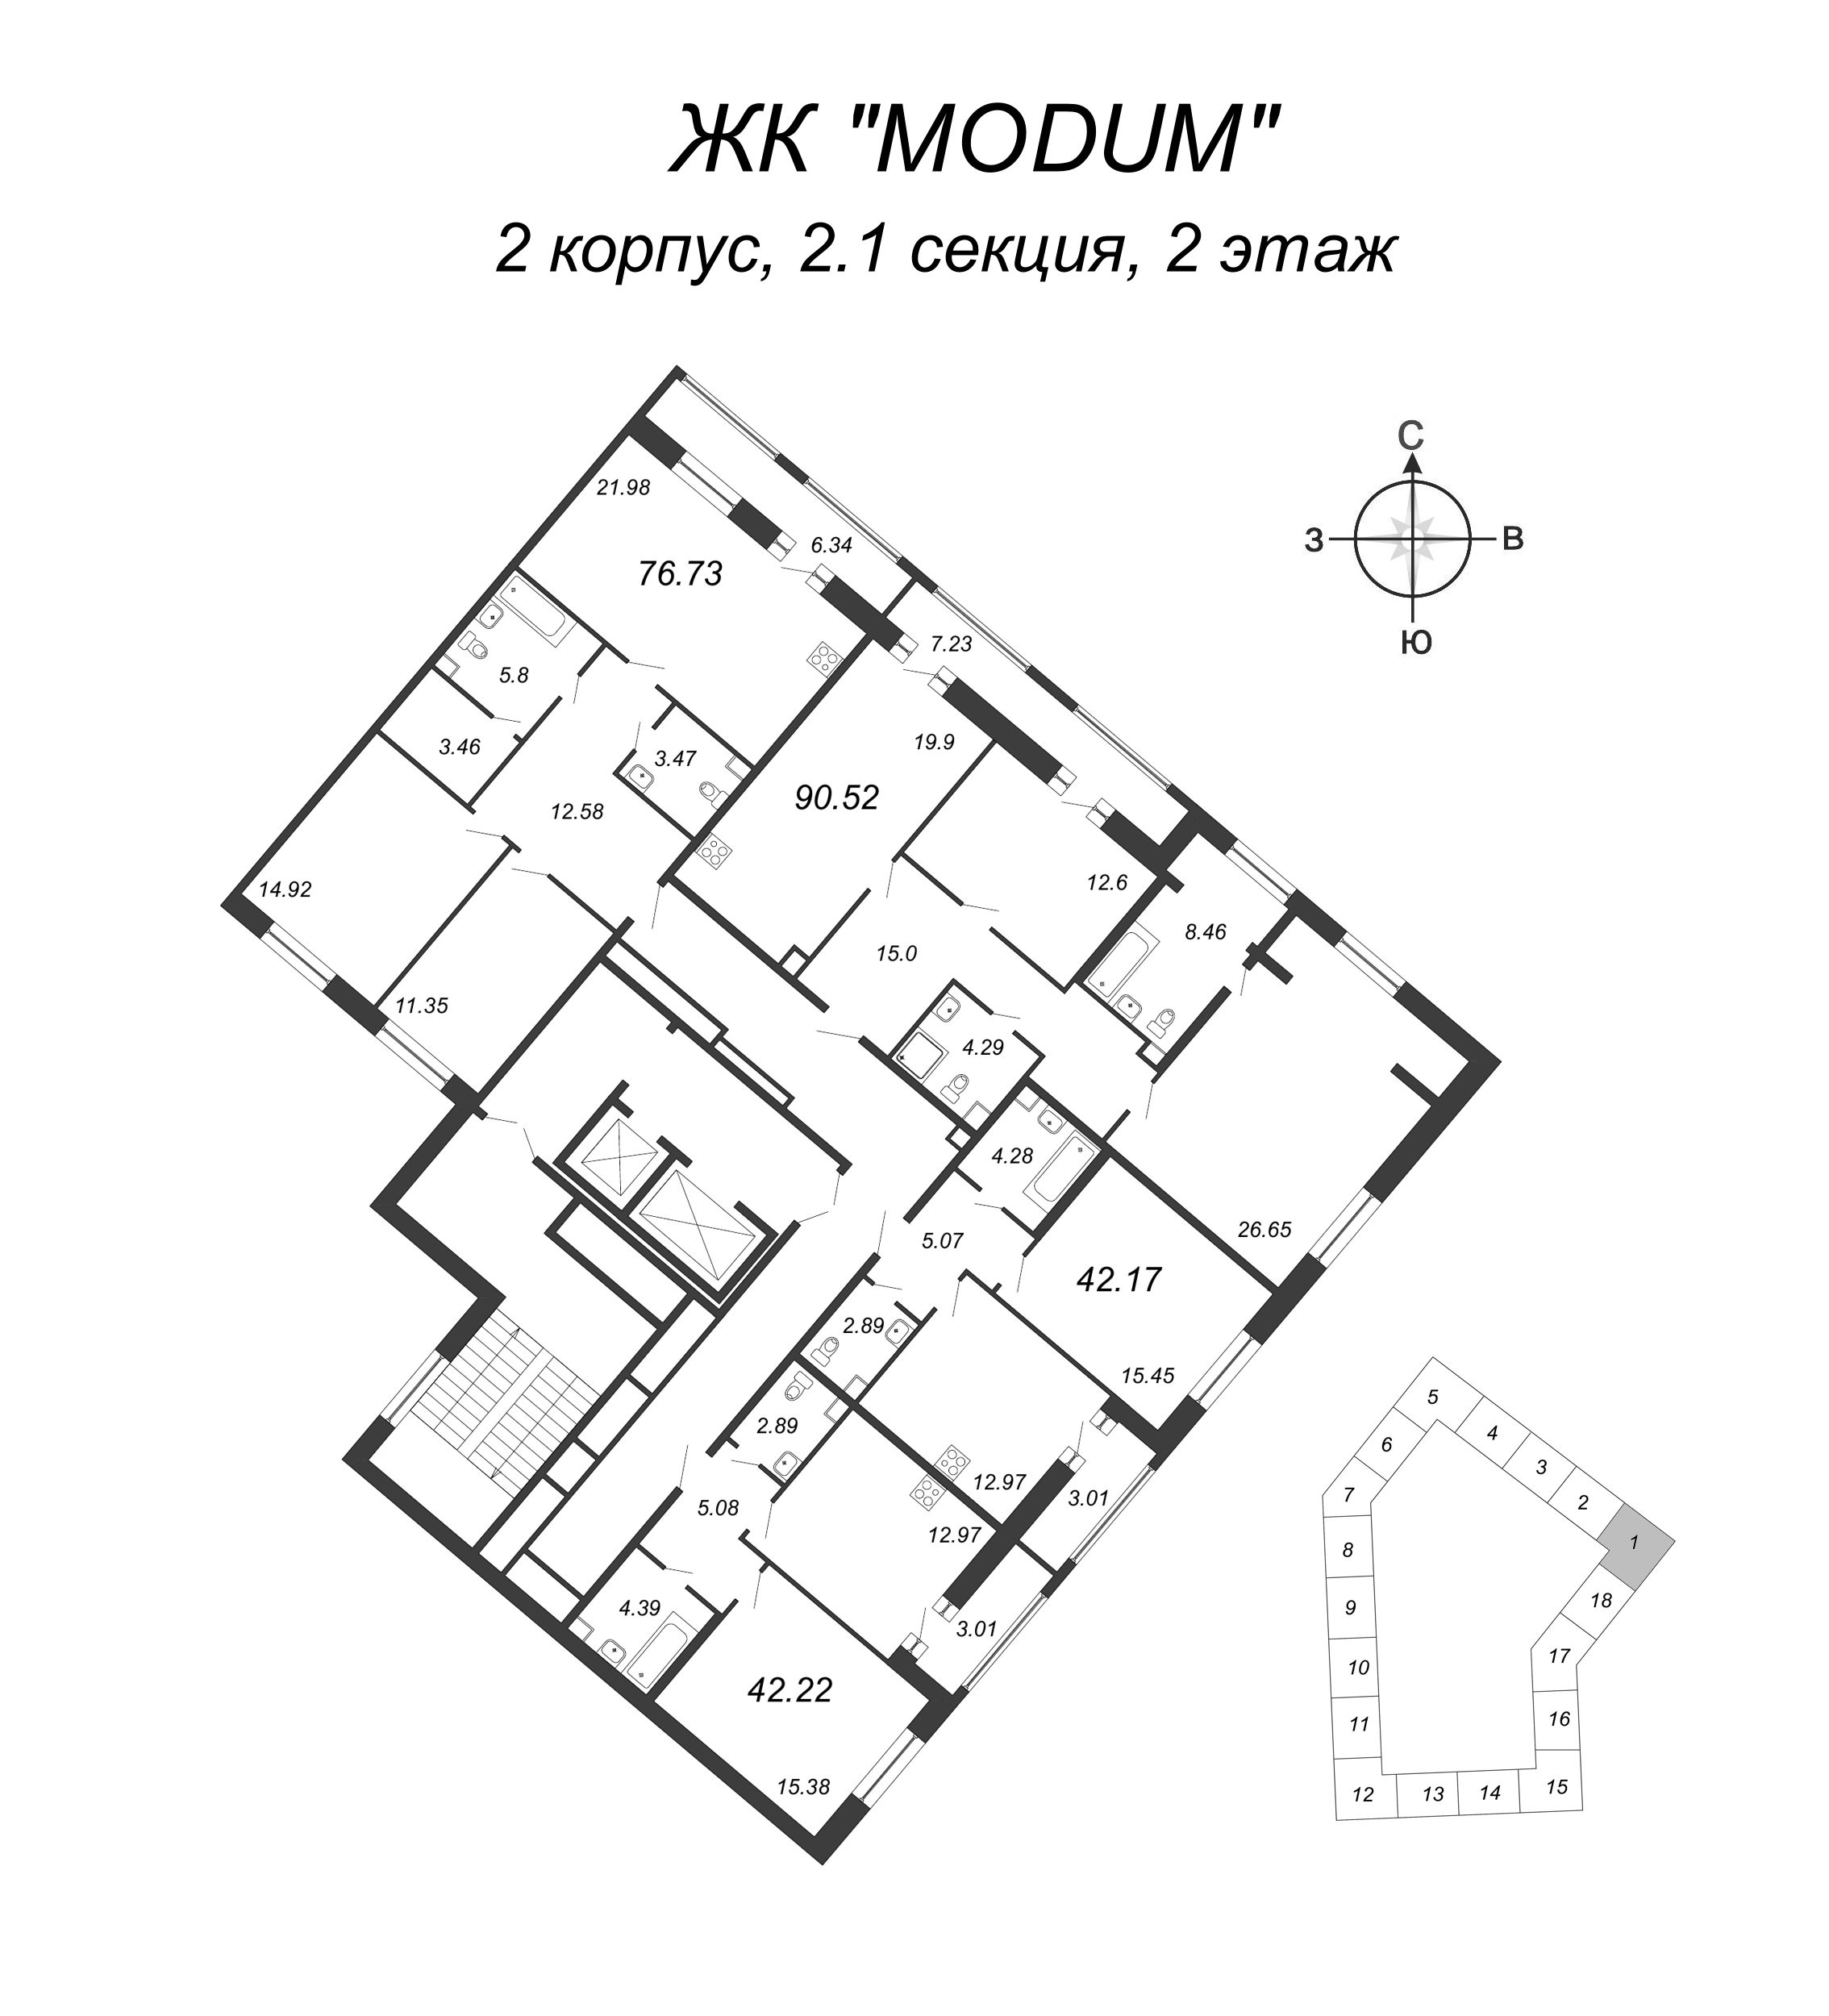 3-комнатная (Евро) квартира, 90.52 м² в ЖК "Modum" - планировка этажа